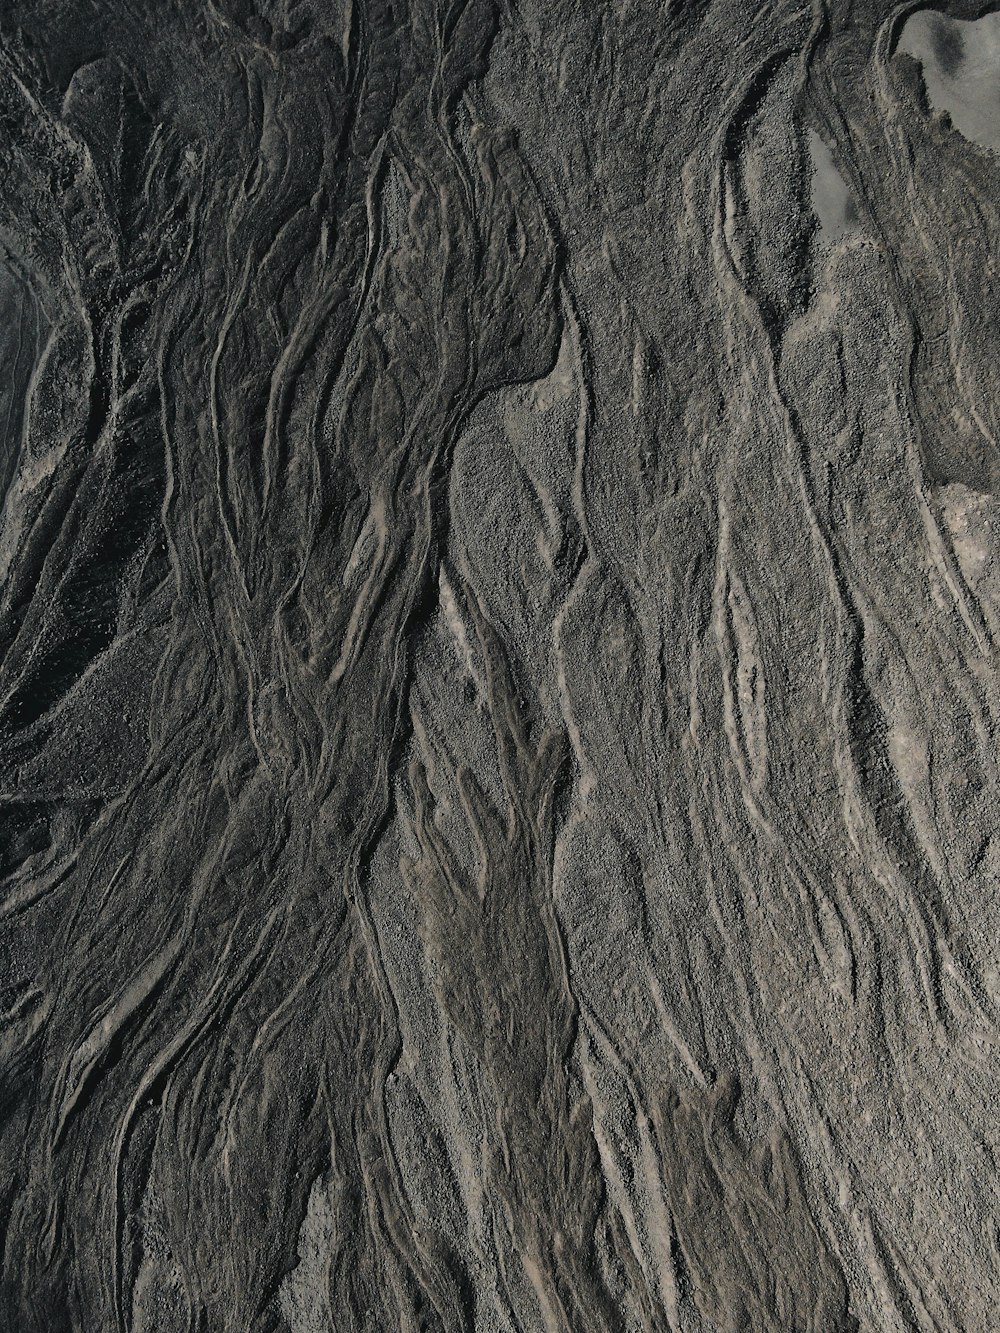 formação rochosa marrom e preta